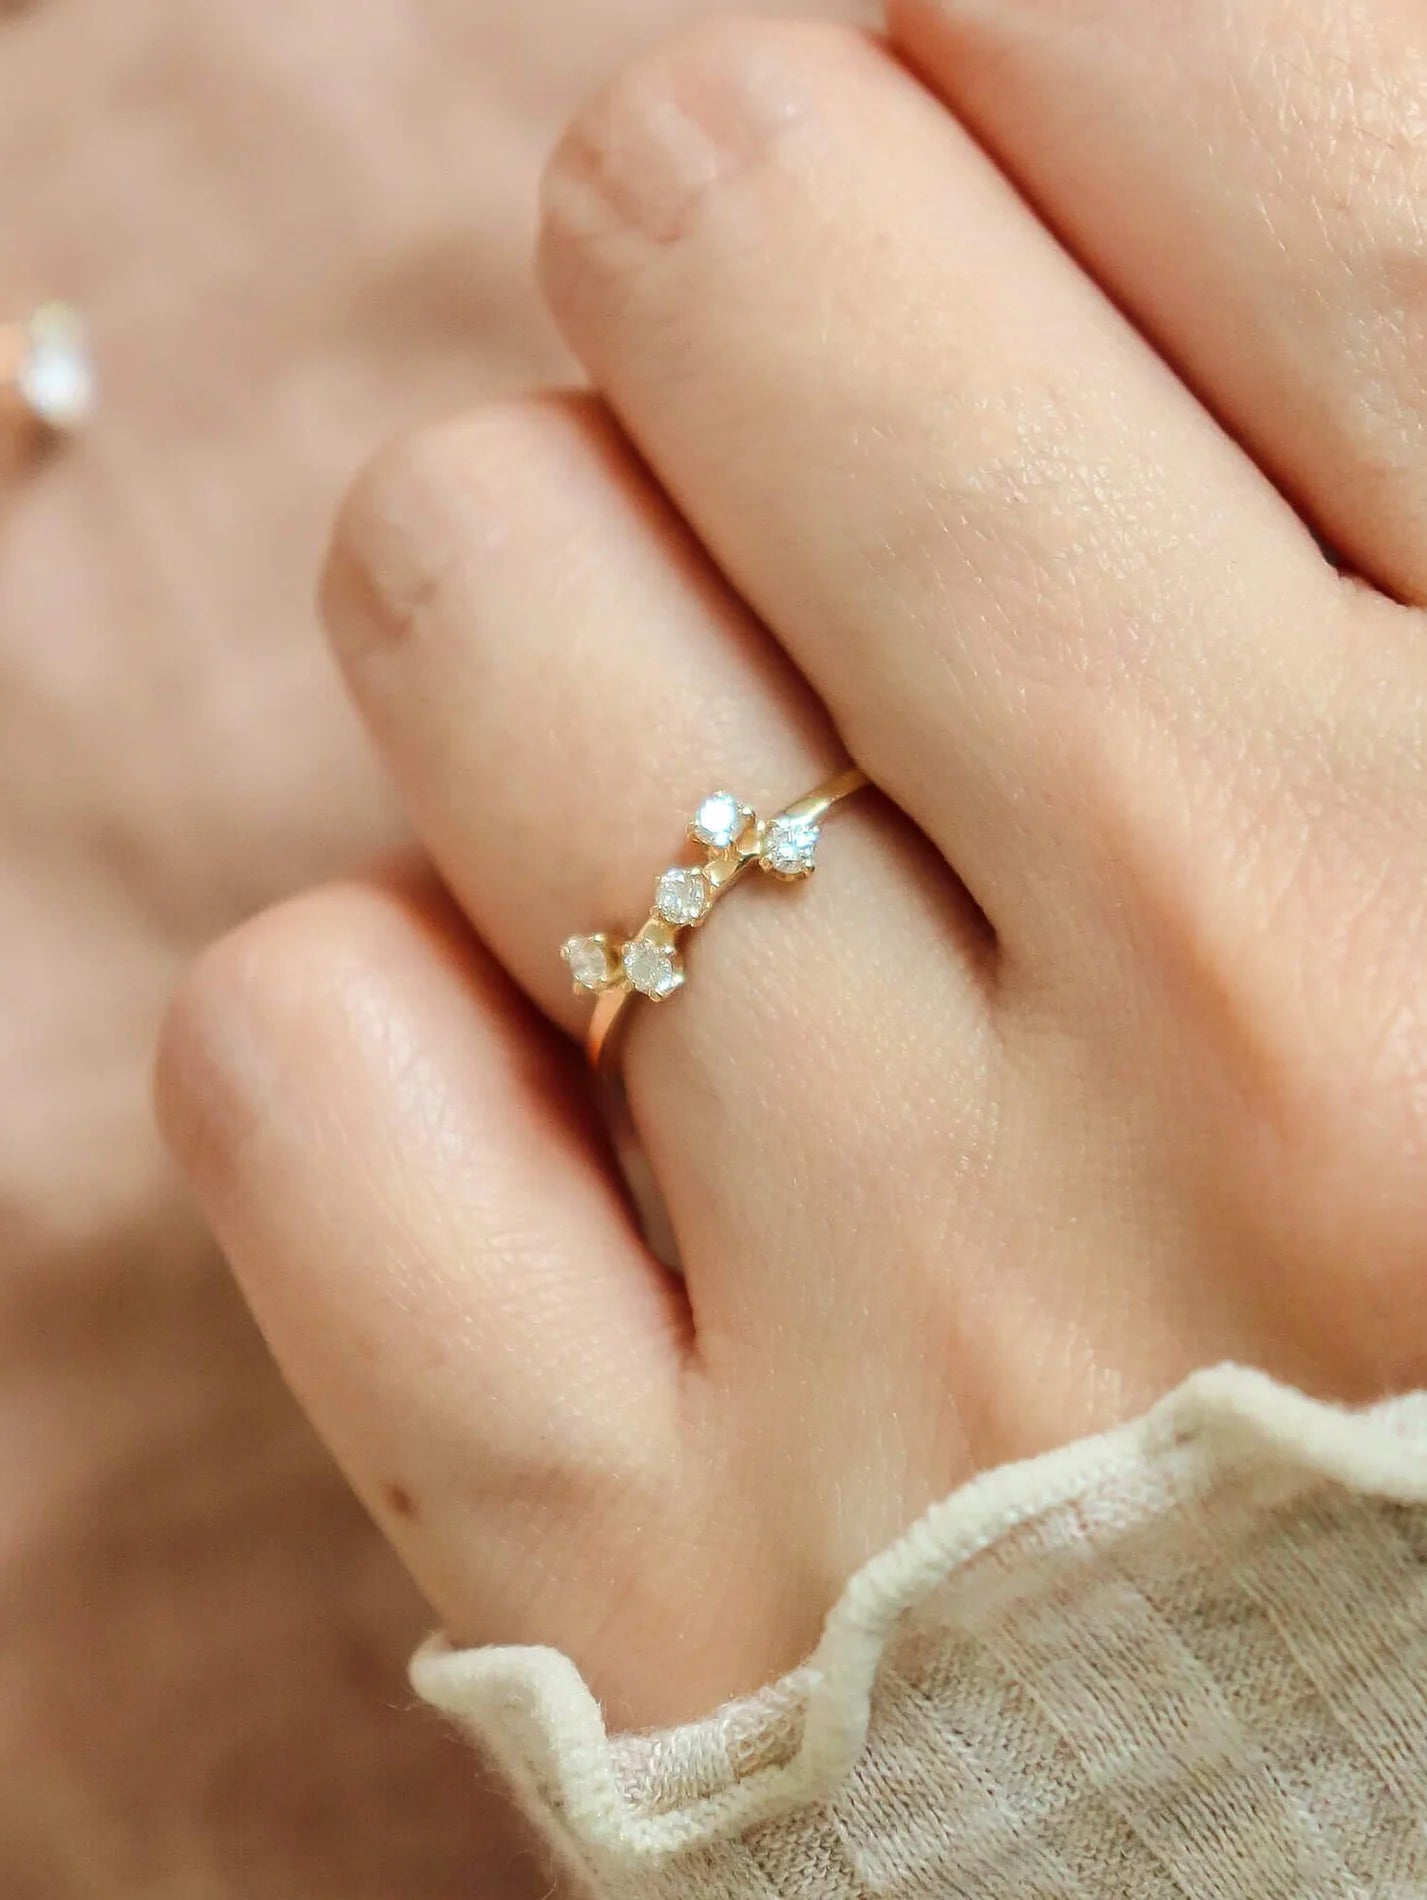 Buy Diamond Rings For Women Online at Best Price | Starkle